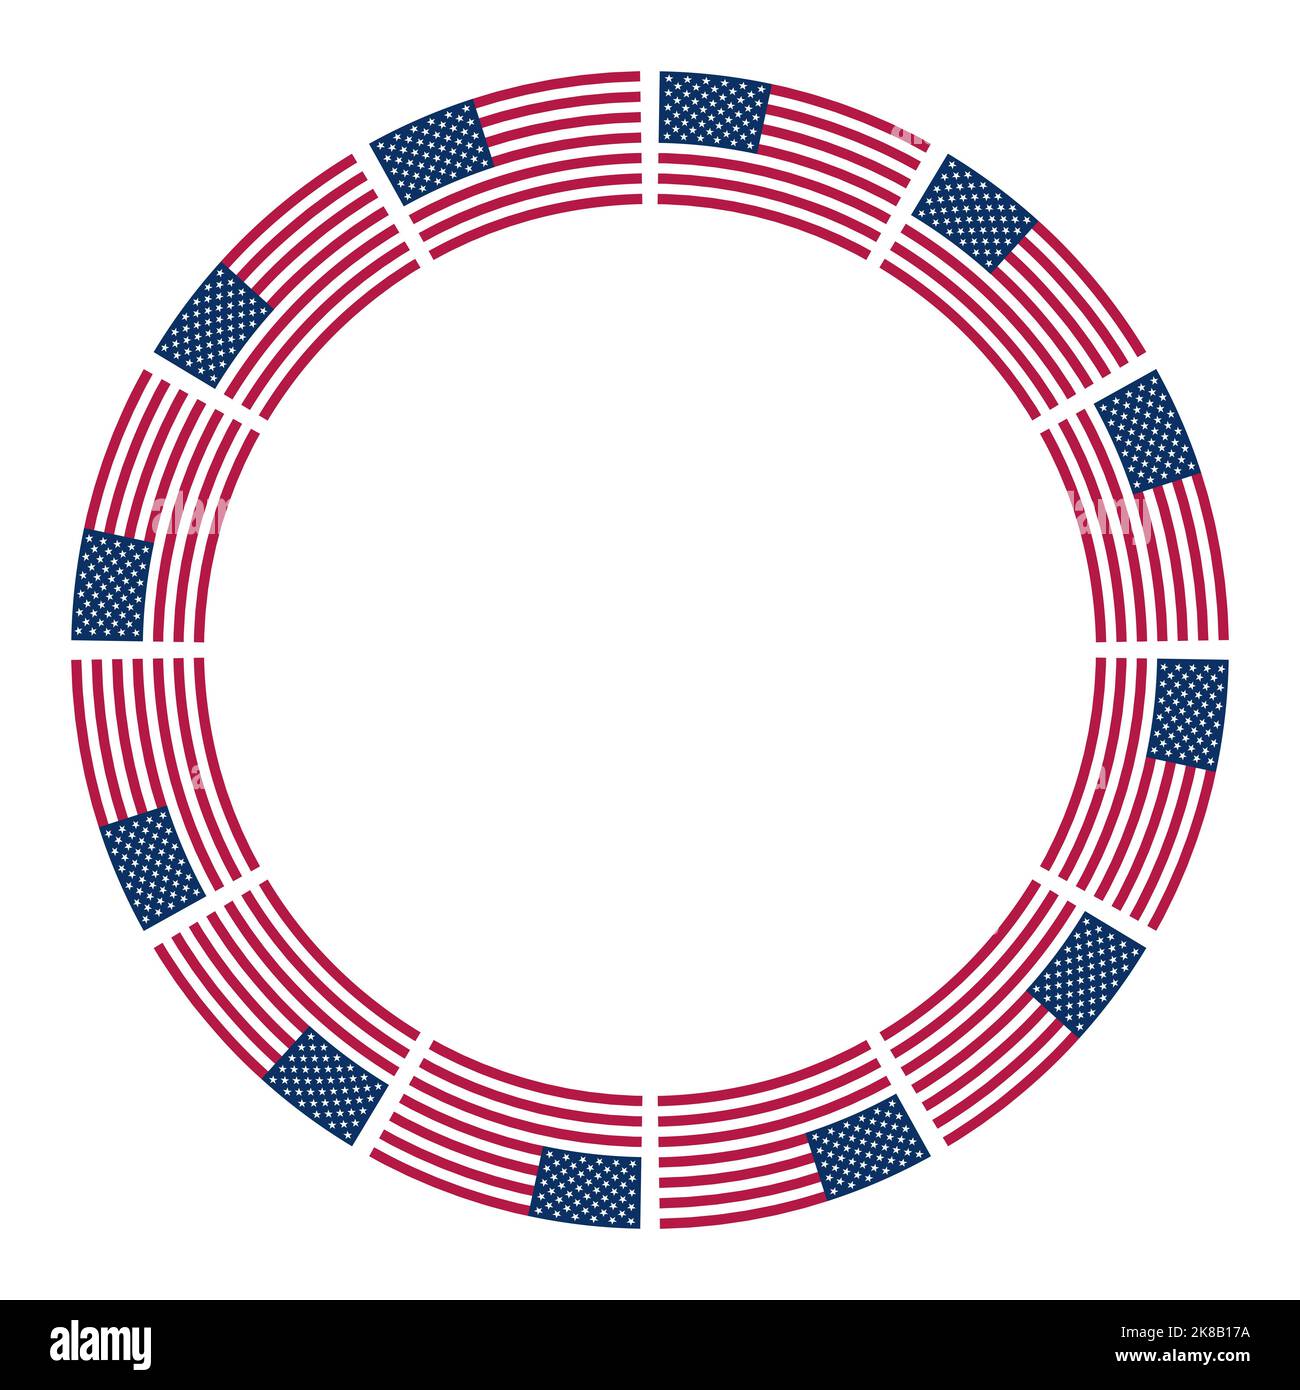 Flagge der Vereinigten Staaten, Kreisrahmen. Grenze, aus dem wiederholten Motiv der Nationalflagge der Vereinigten Staaten von Amerika. Stockfoto